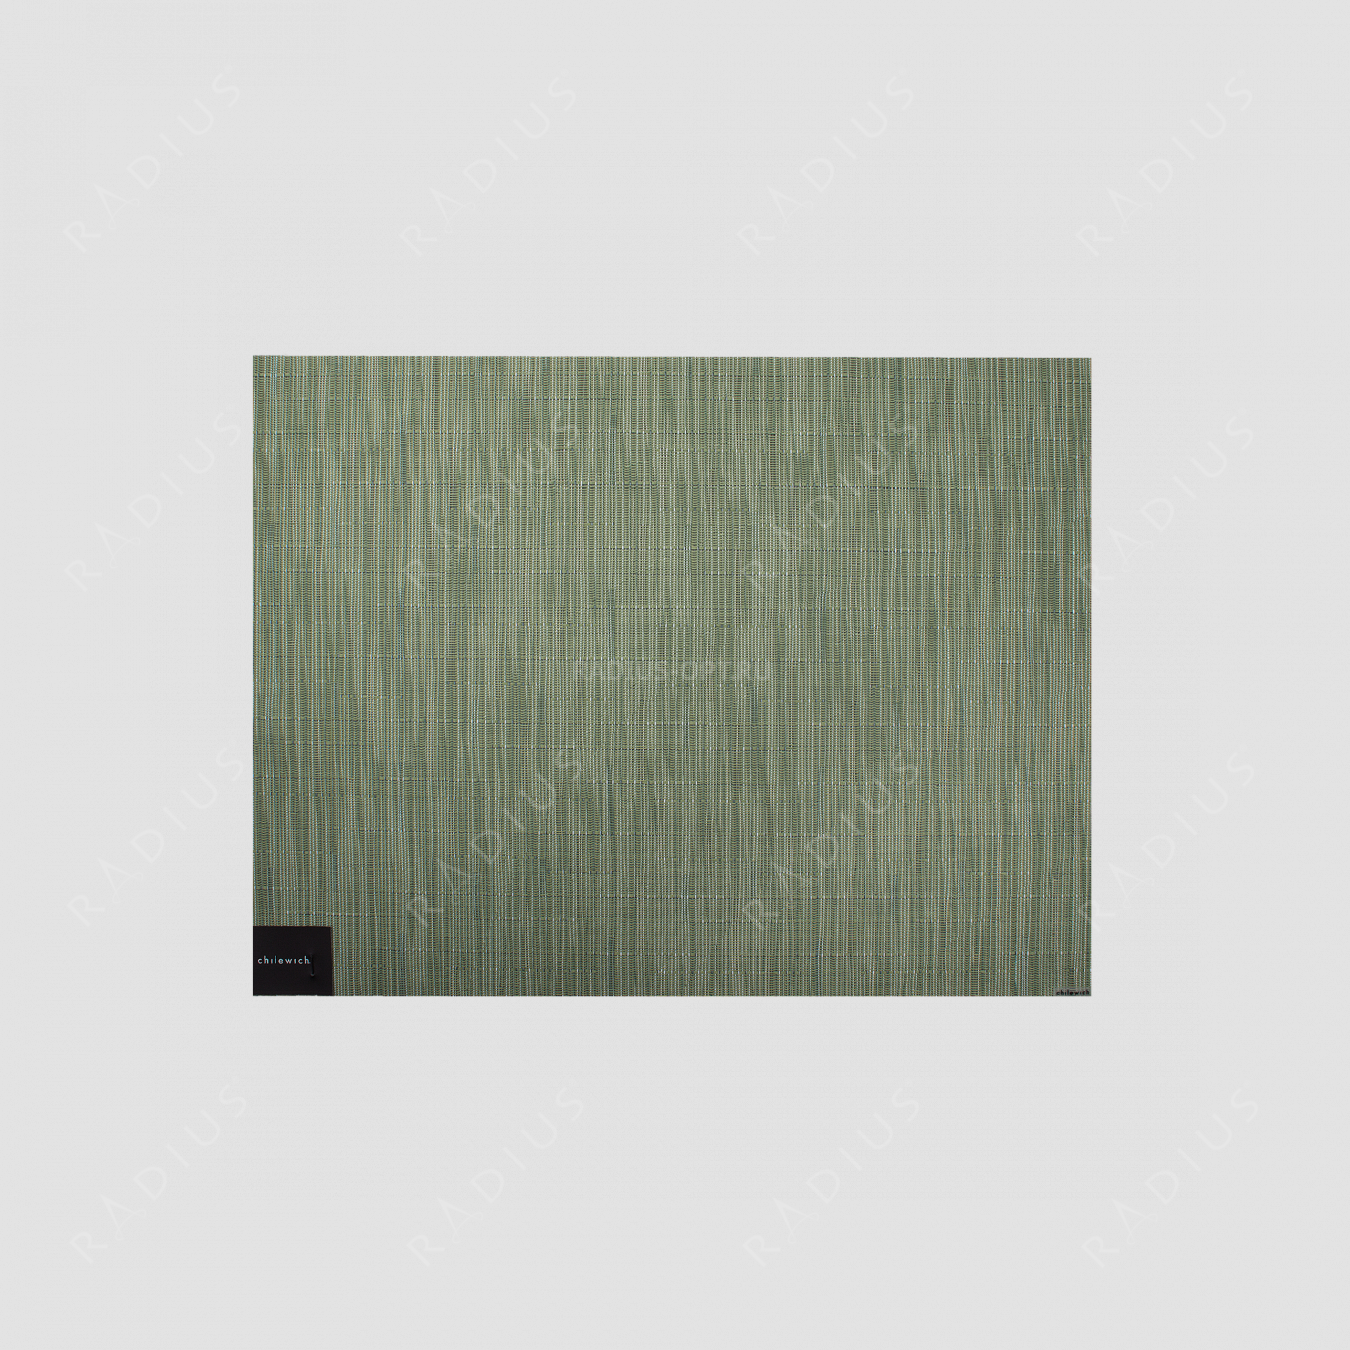 Салфетка подстановочная, жаккардовое плетение, винил, (36х48) Spring Green, серия Bamboo, CHILEWICH, США